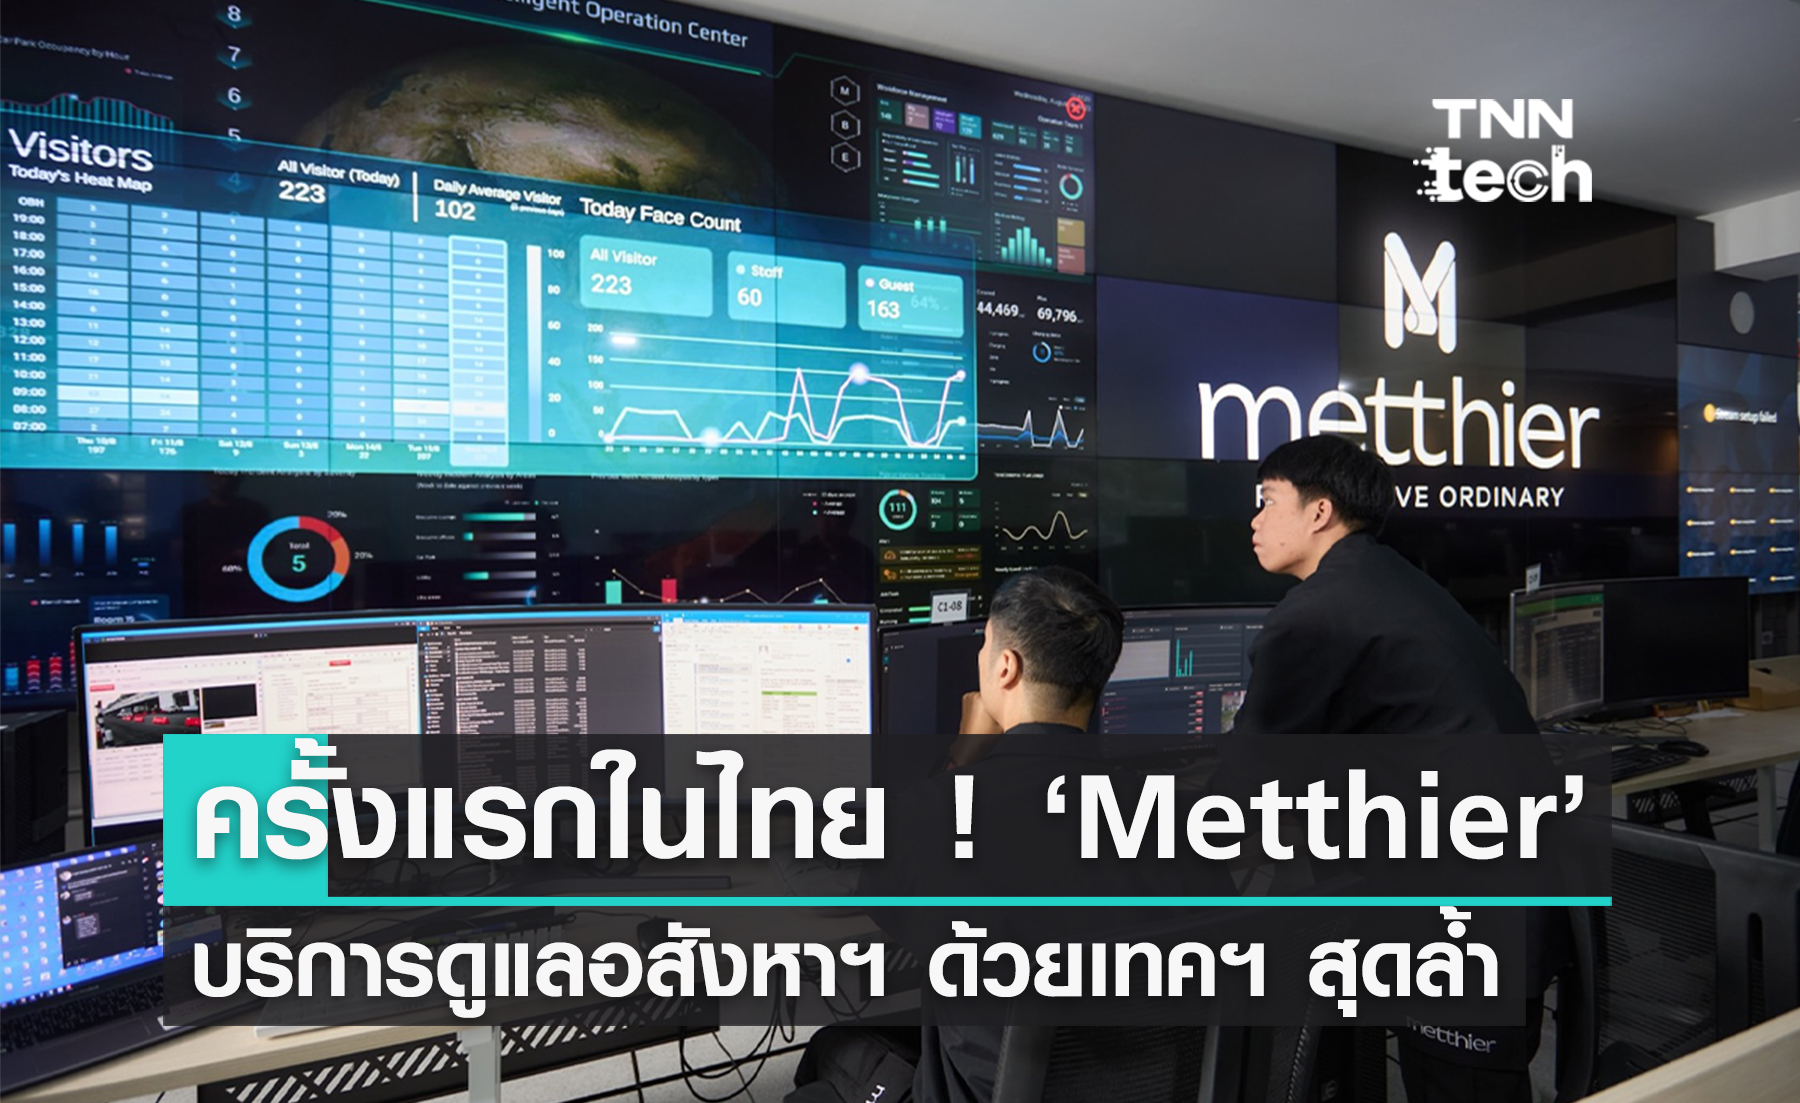 เปิดตัว "Metthier" ผู้ให้บริการระบบ Smart Facility Management รายแรกของไทยด้วย AI, หุ่นยนต์, และเทคฯ สุดล้ำ